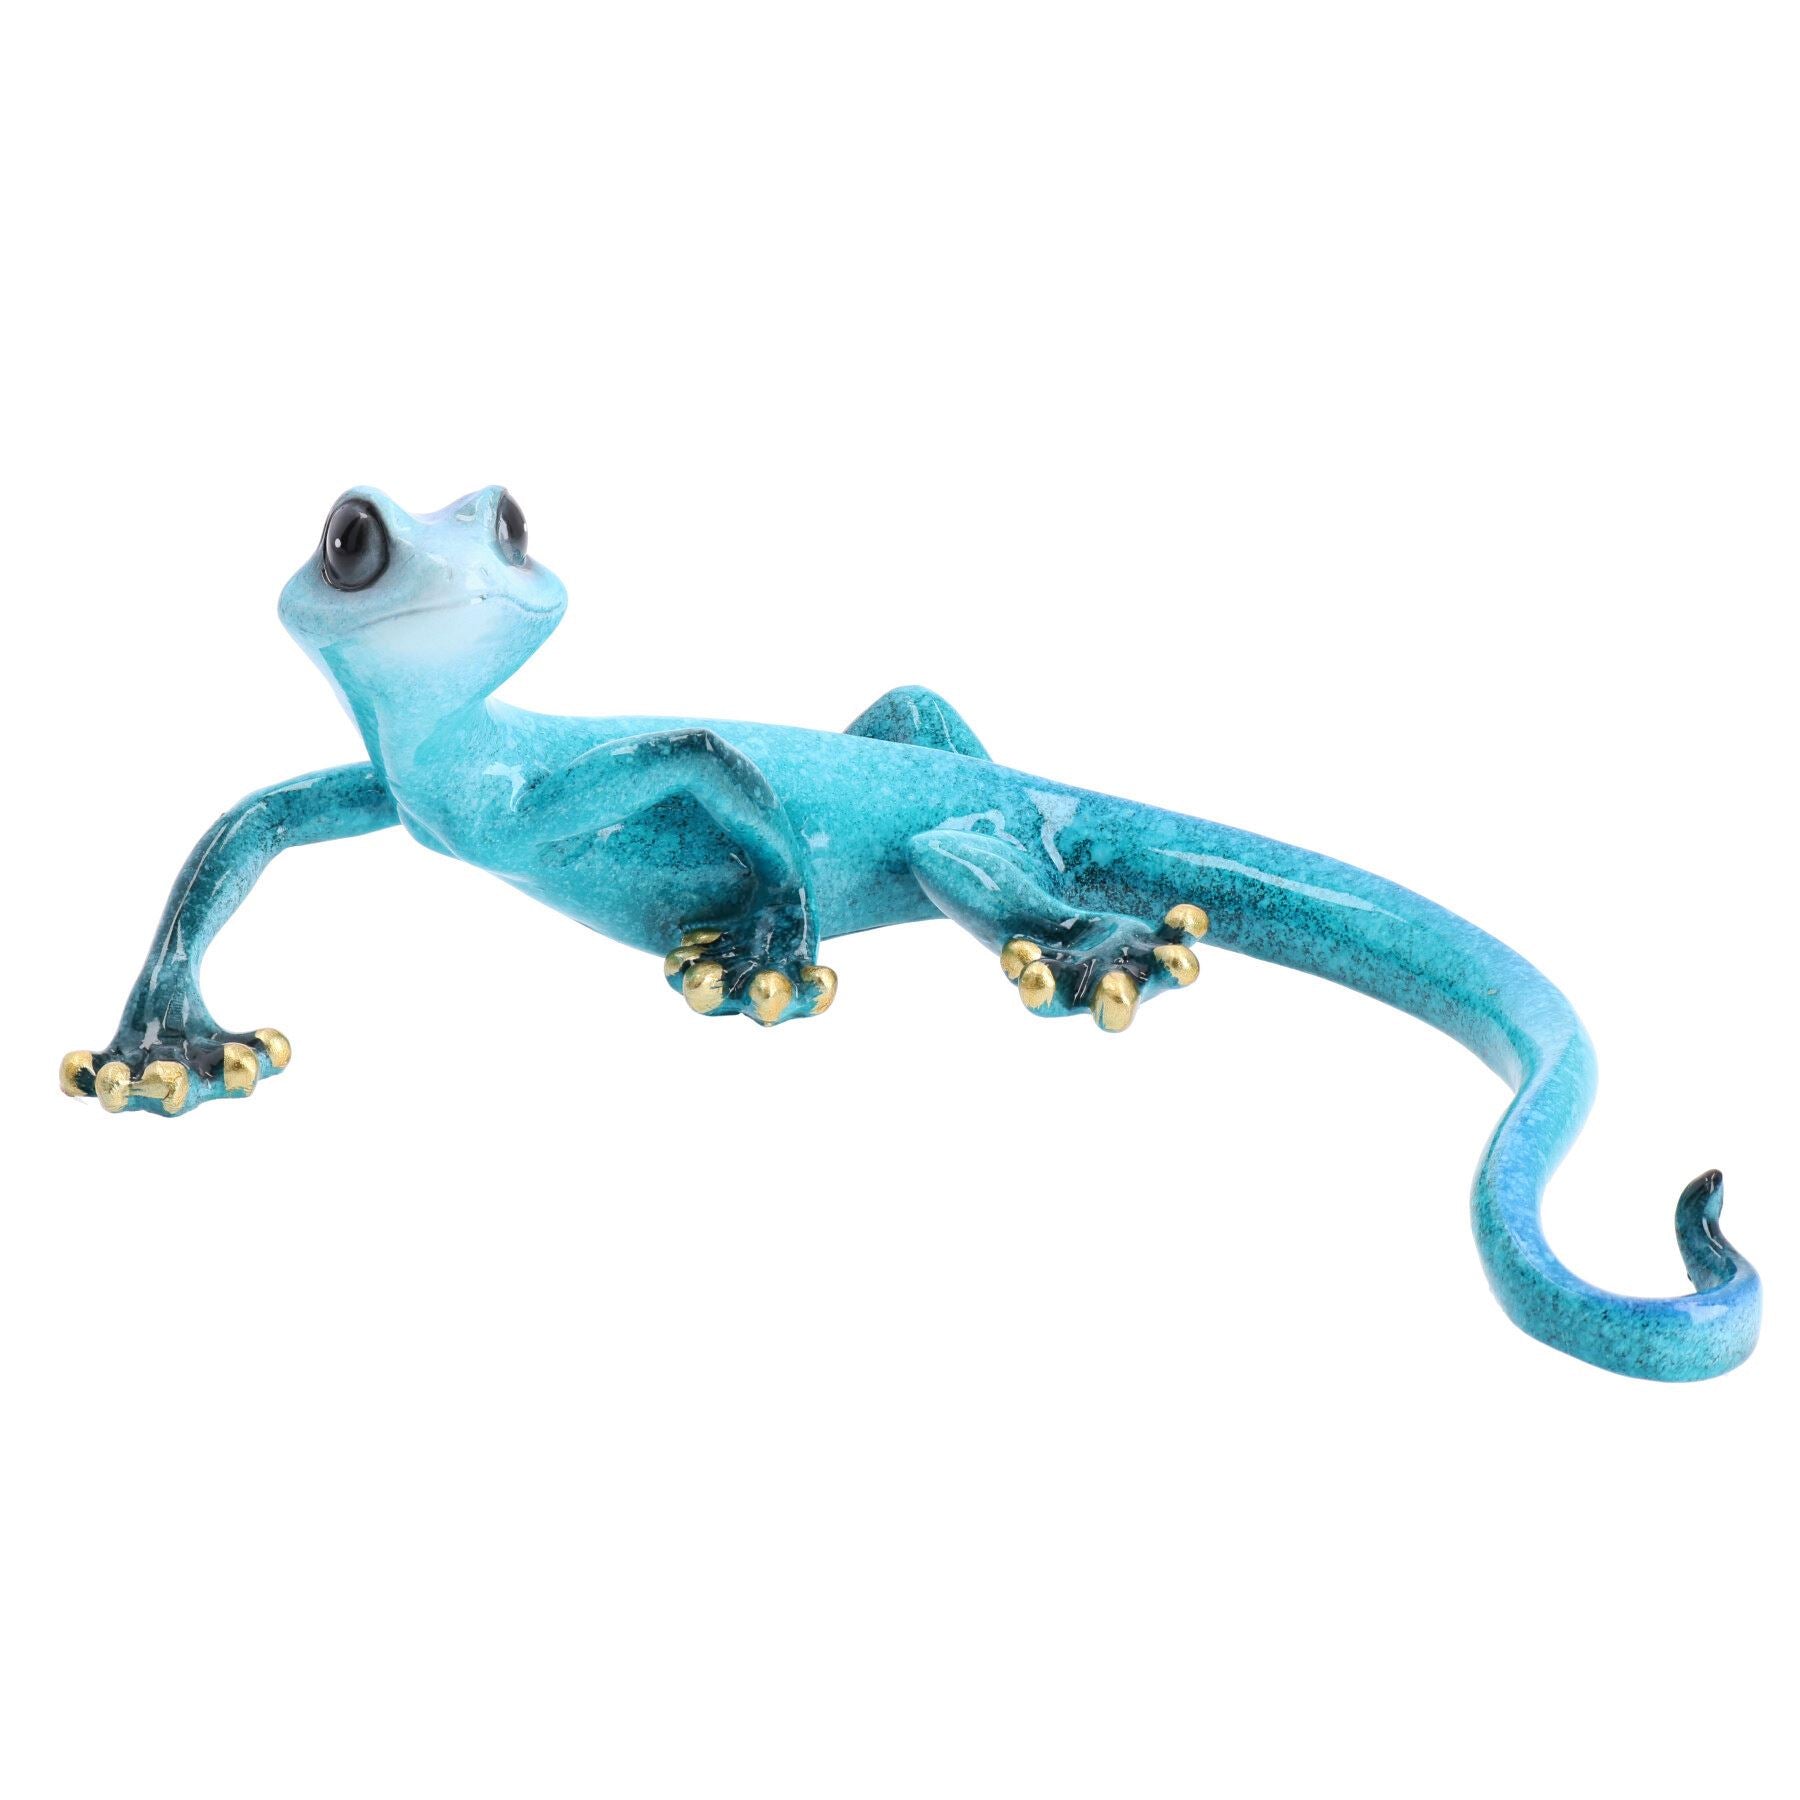 Blue Speckled Gecko Lizard Resin Wall Shed Sculpture Decor Statue Medium